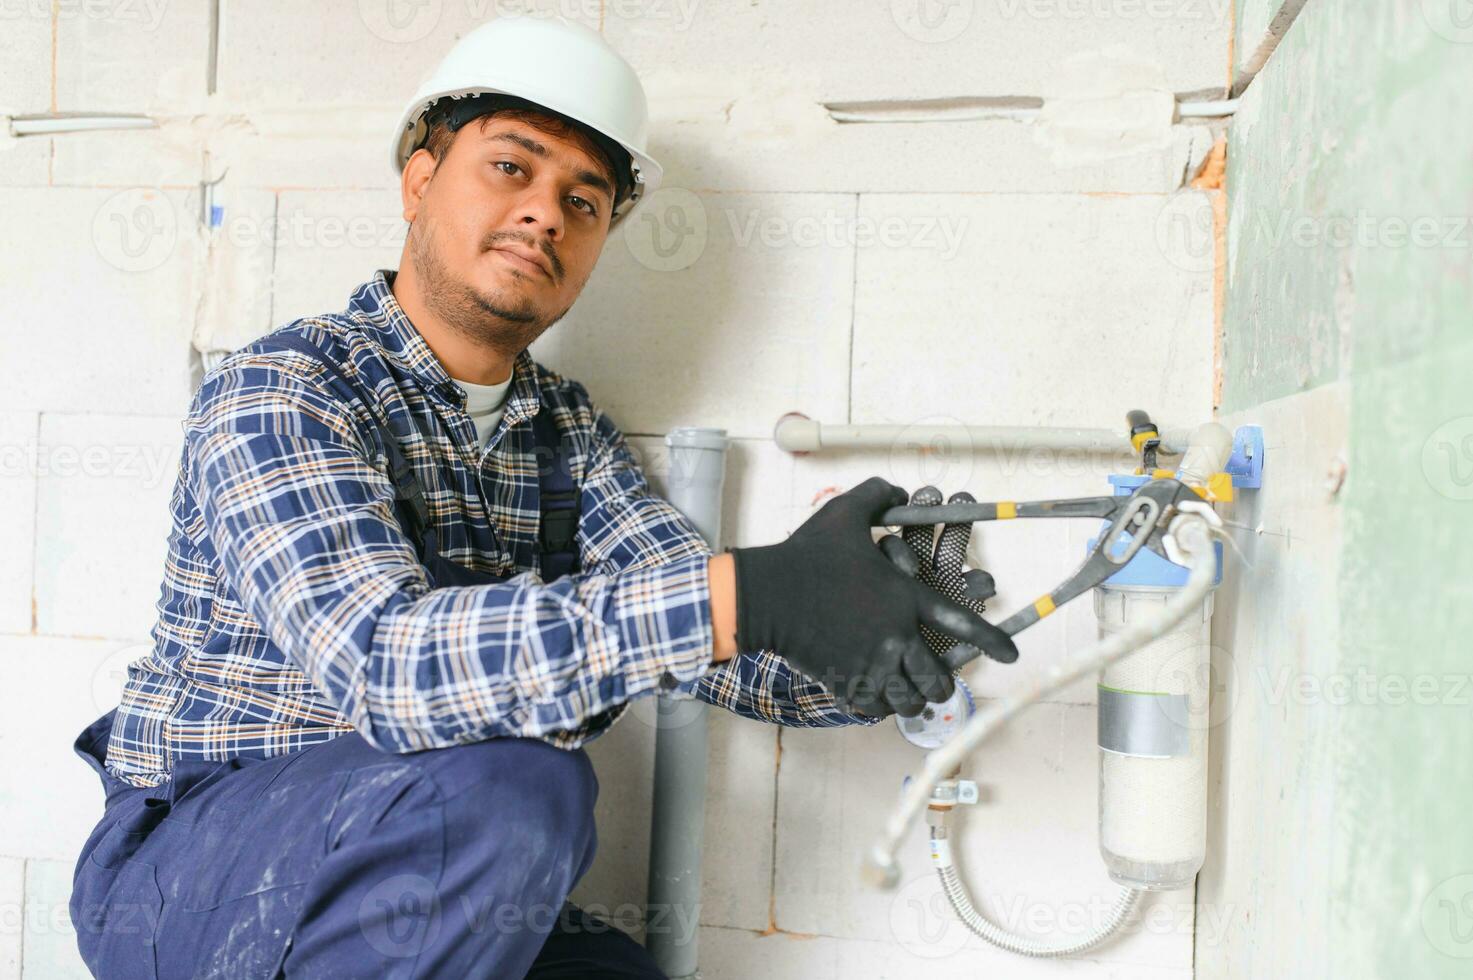 indiano idraulico installazione acqua attrezzatura - metro, filtro e pressione riduttore foto